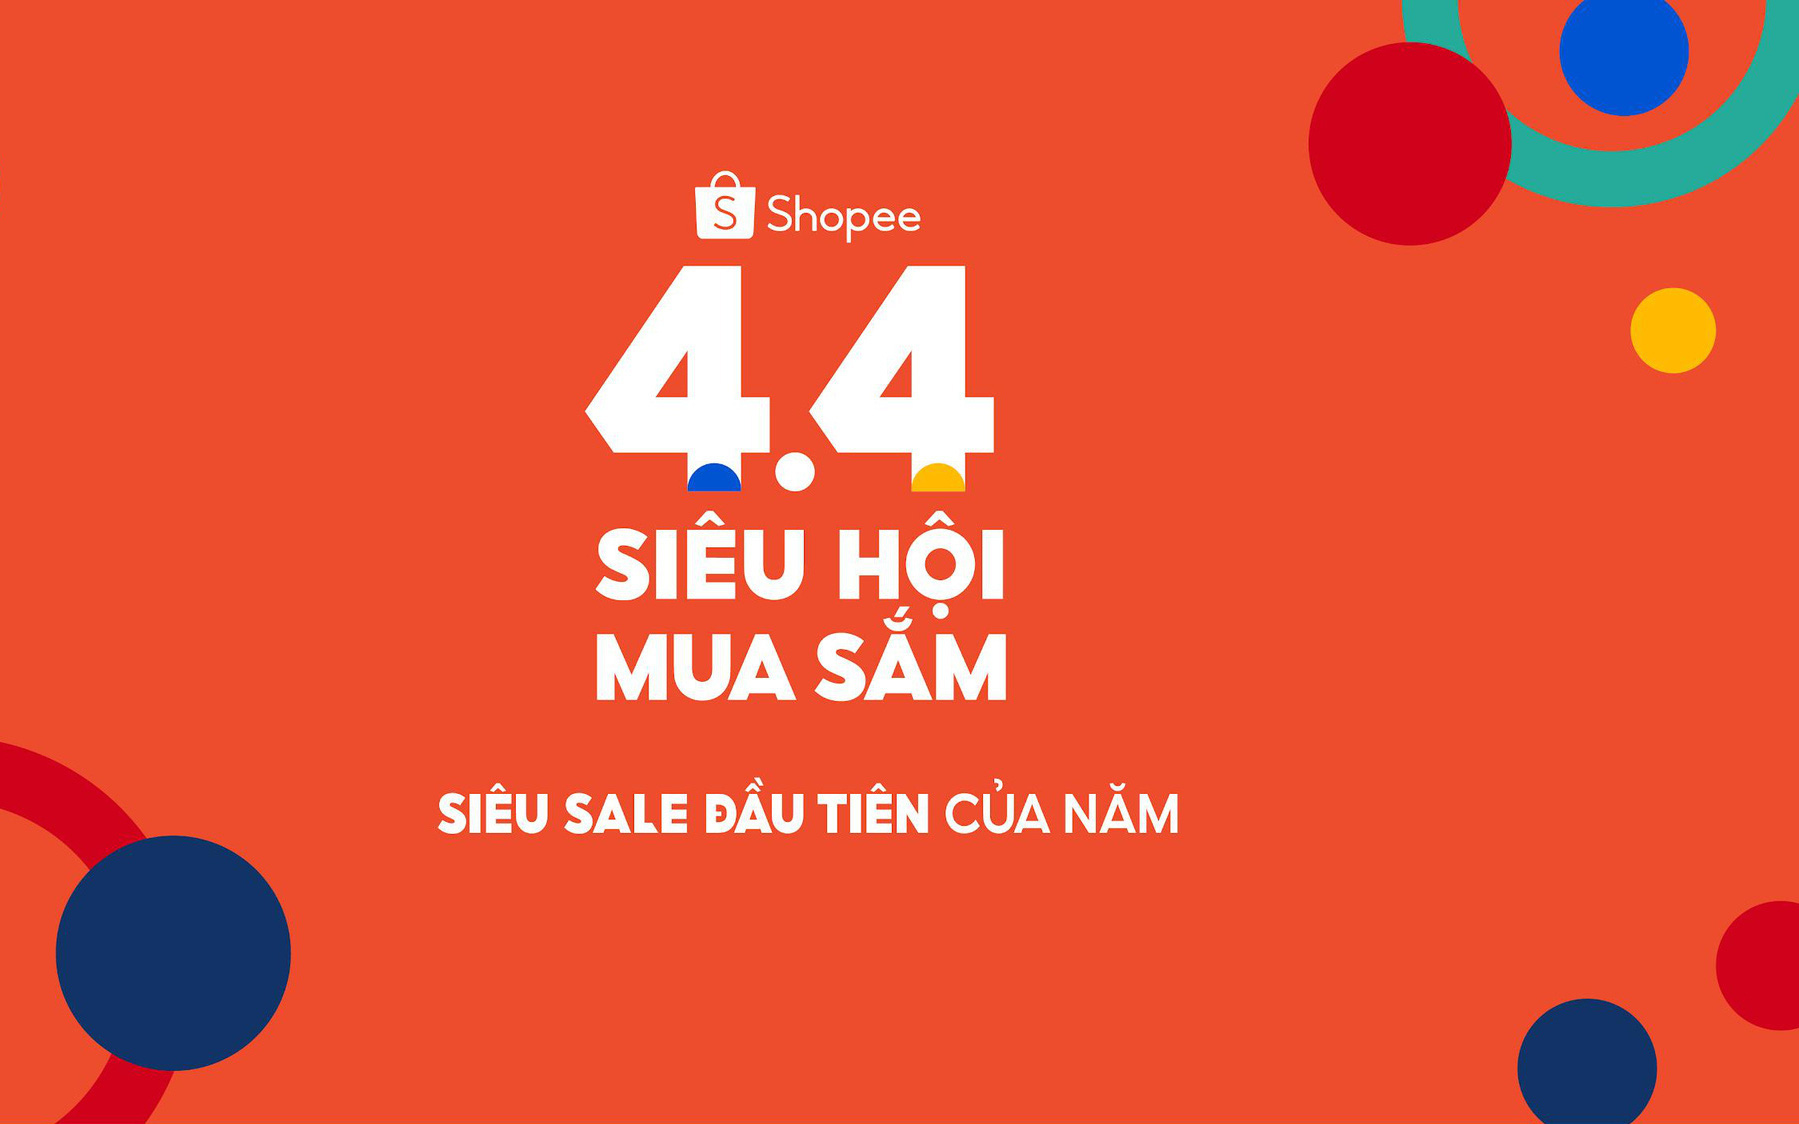 Shopee khai hội mua sắm 4.4, đánh dấu siêu sale đầu tiên của năm 2021 trên toàn khu vực